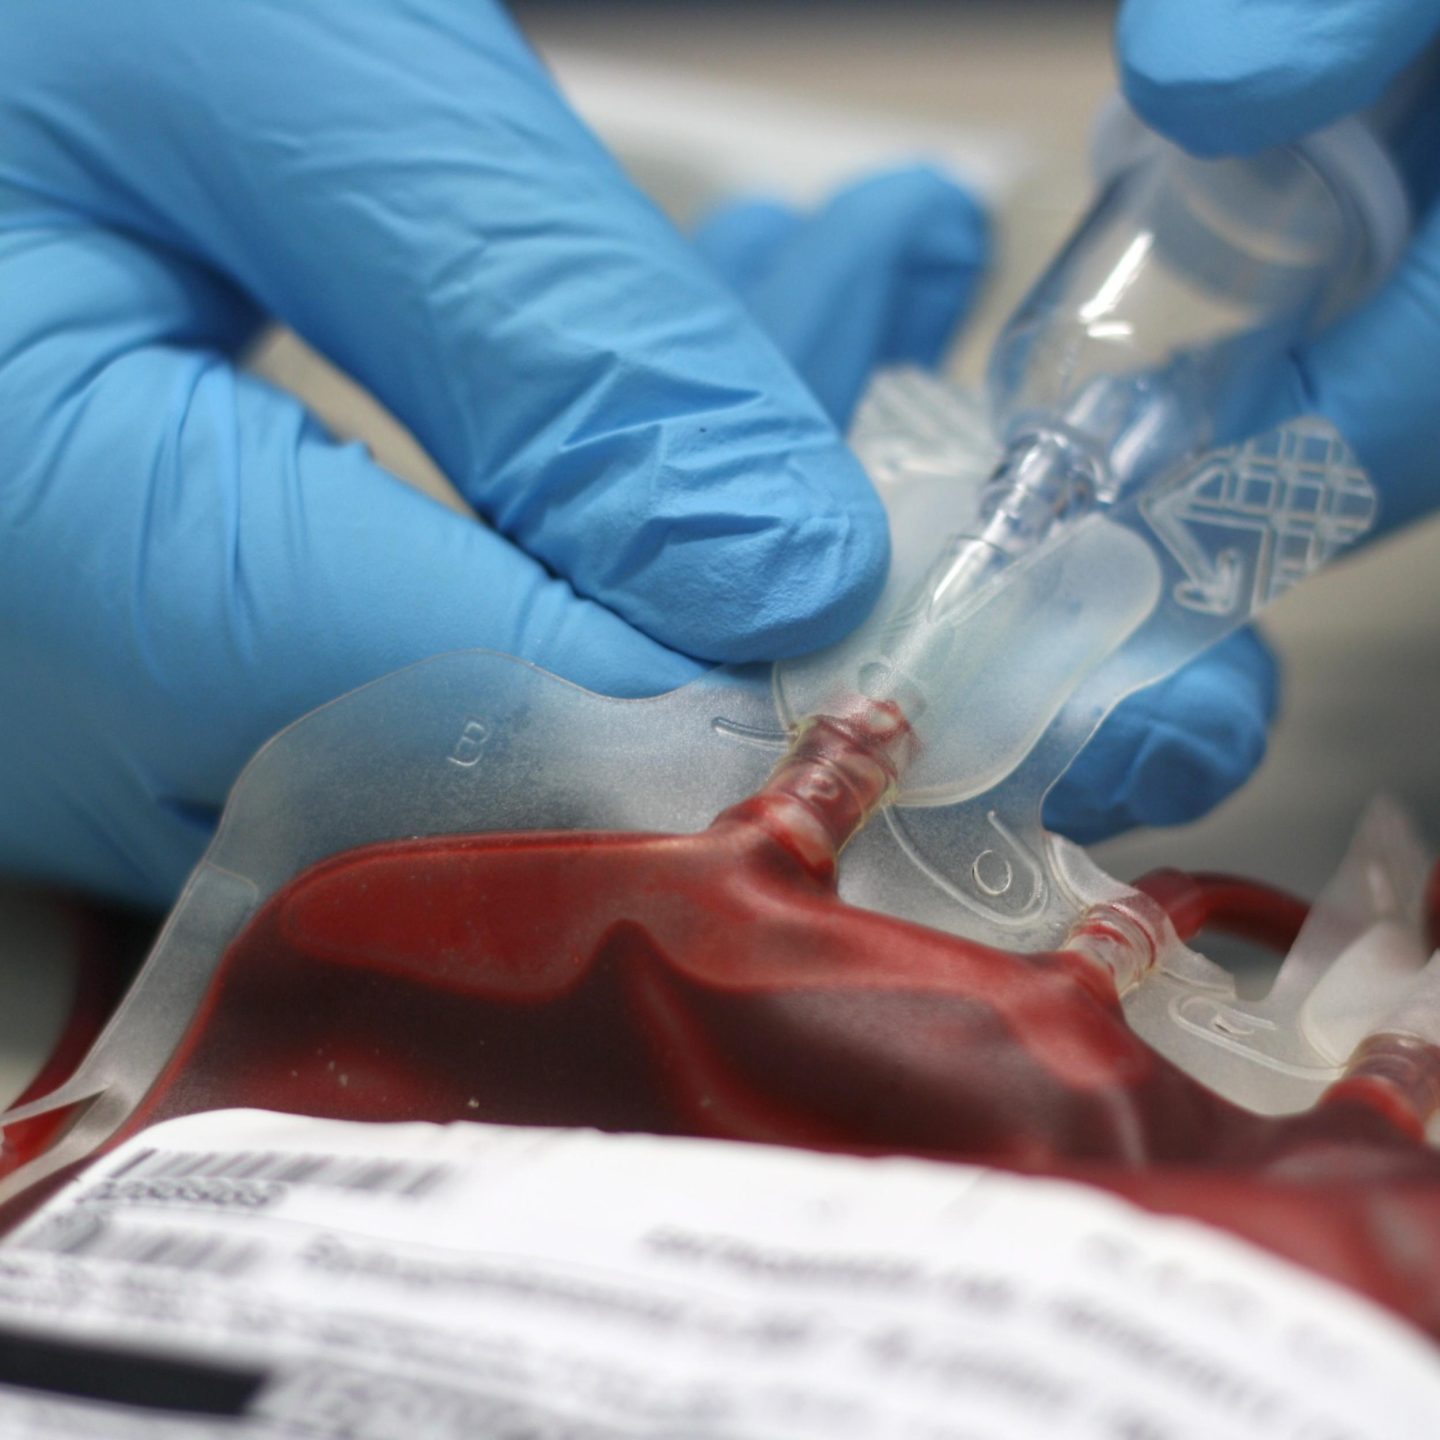 ما الذي يمنع العلماء من صنع دم اصطناعي يمكن منحه لكل محتاج؟